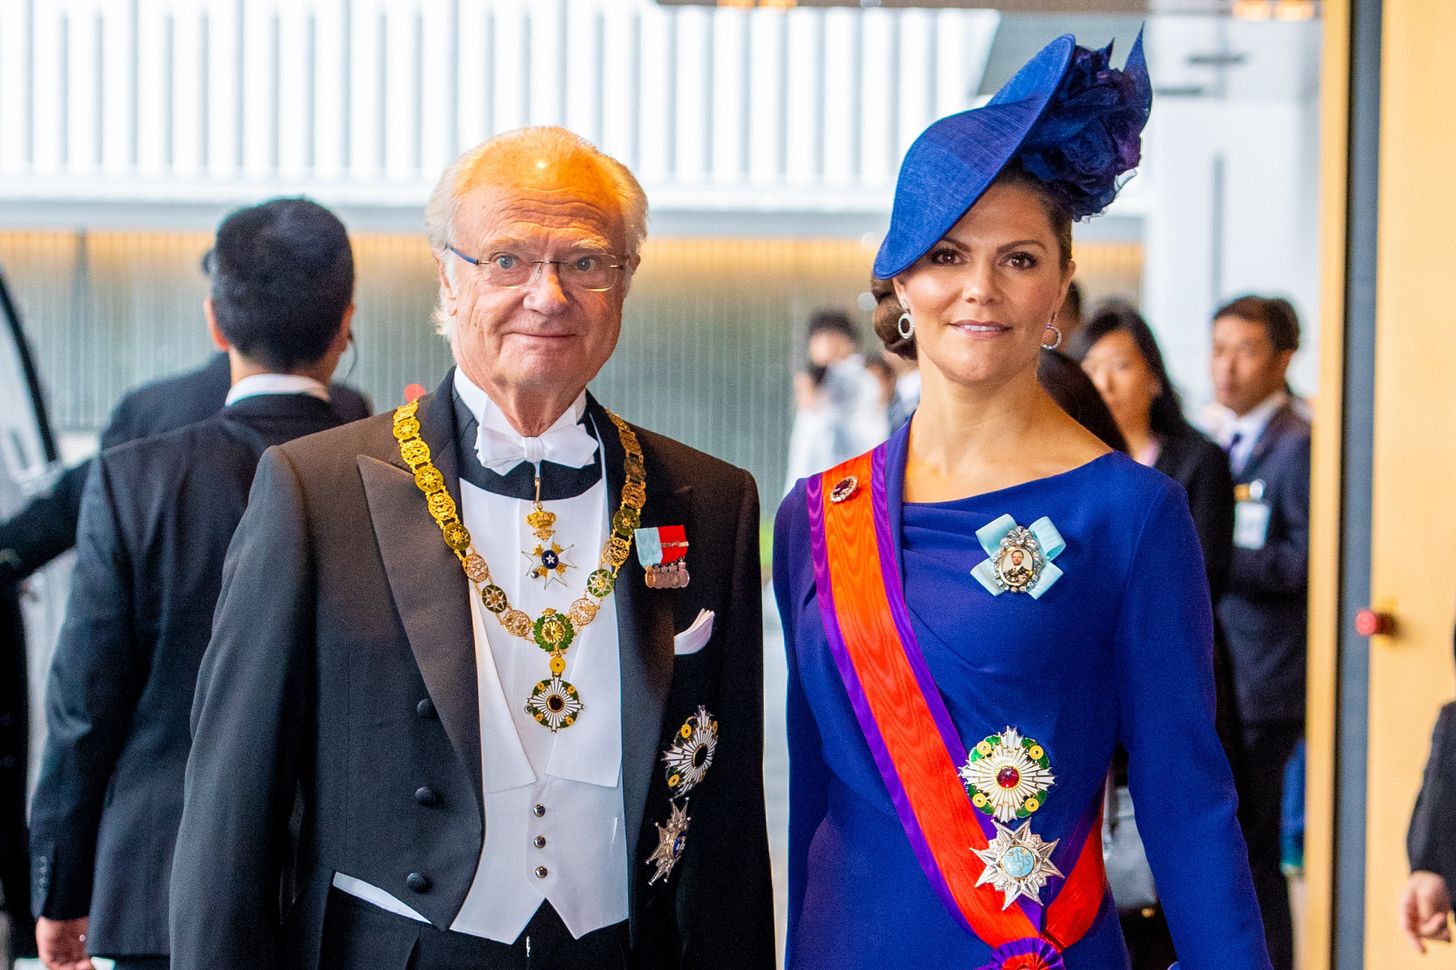 Déze royal zegt het banket van Carl Gustaf af om gezondheidsredenen